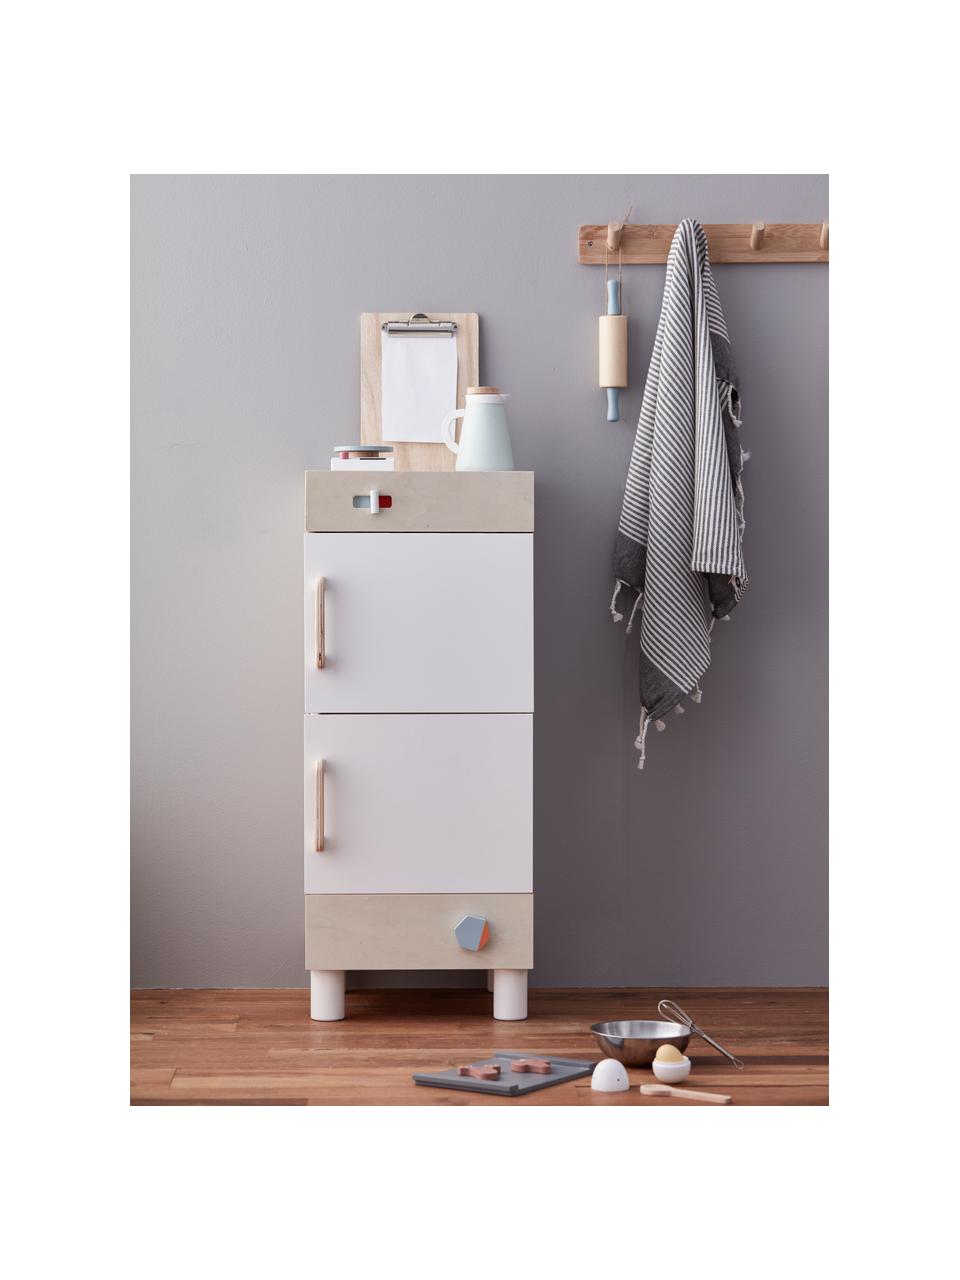 Spielzeug-Kühlschrank, Holz, Weiß, Holz, B 30 x H 73 cm